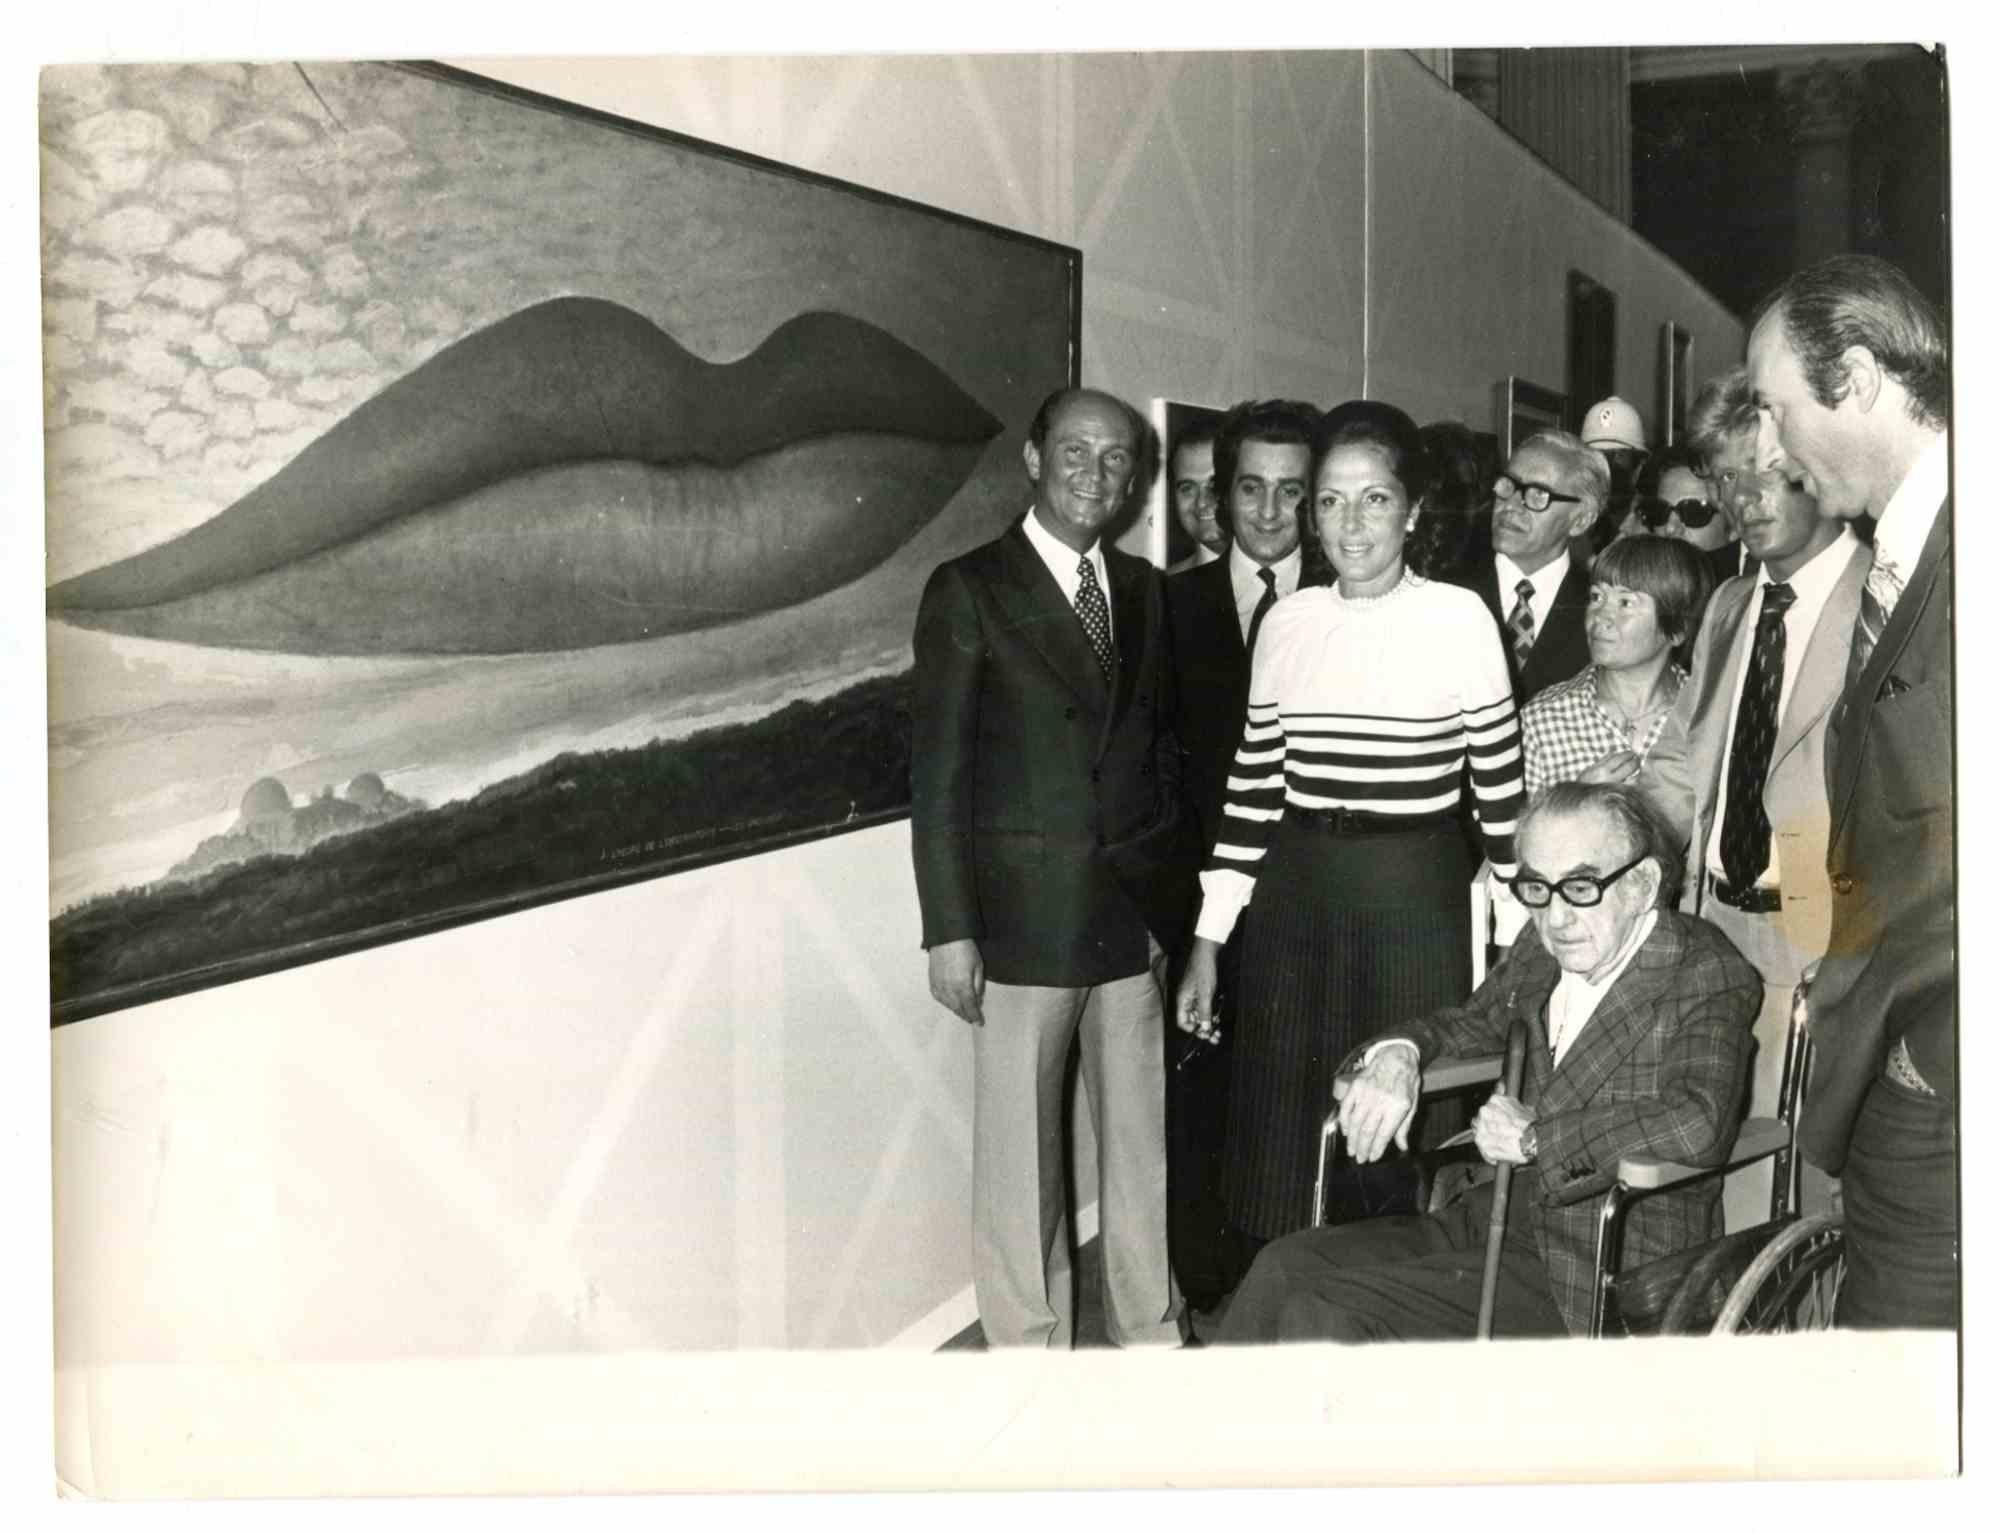 Unknown Figurative Photograph – Ausstellung von Man Rays Fotografien in Rom - Vintage Photo - 1975